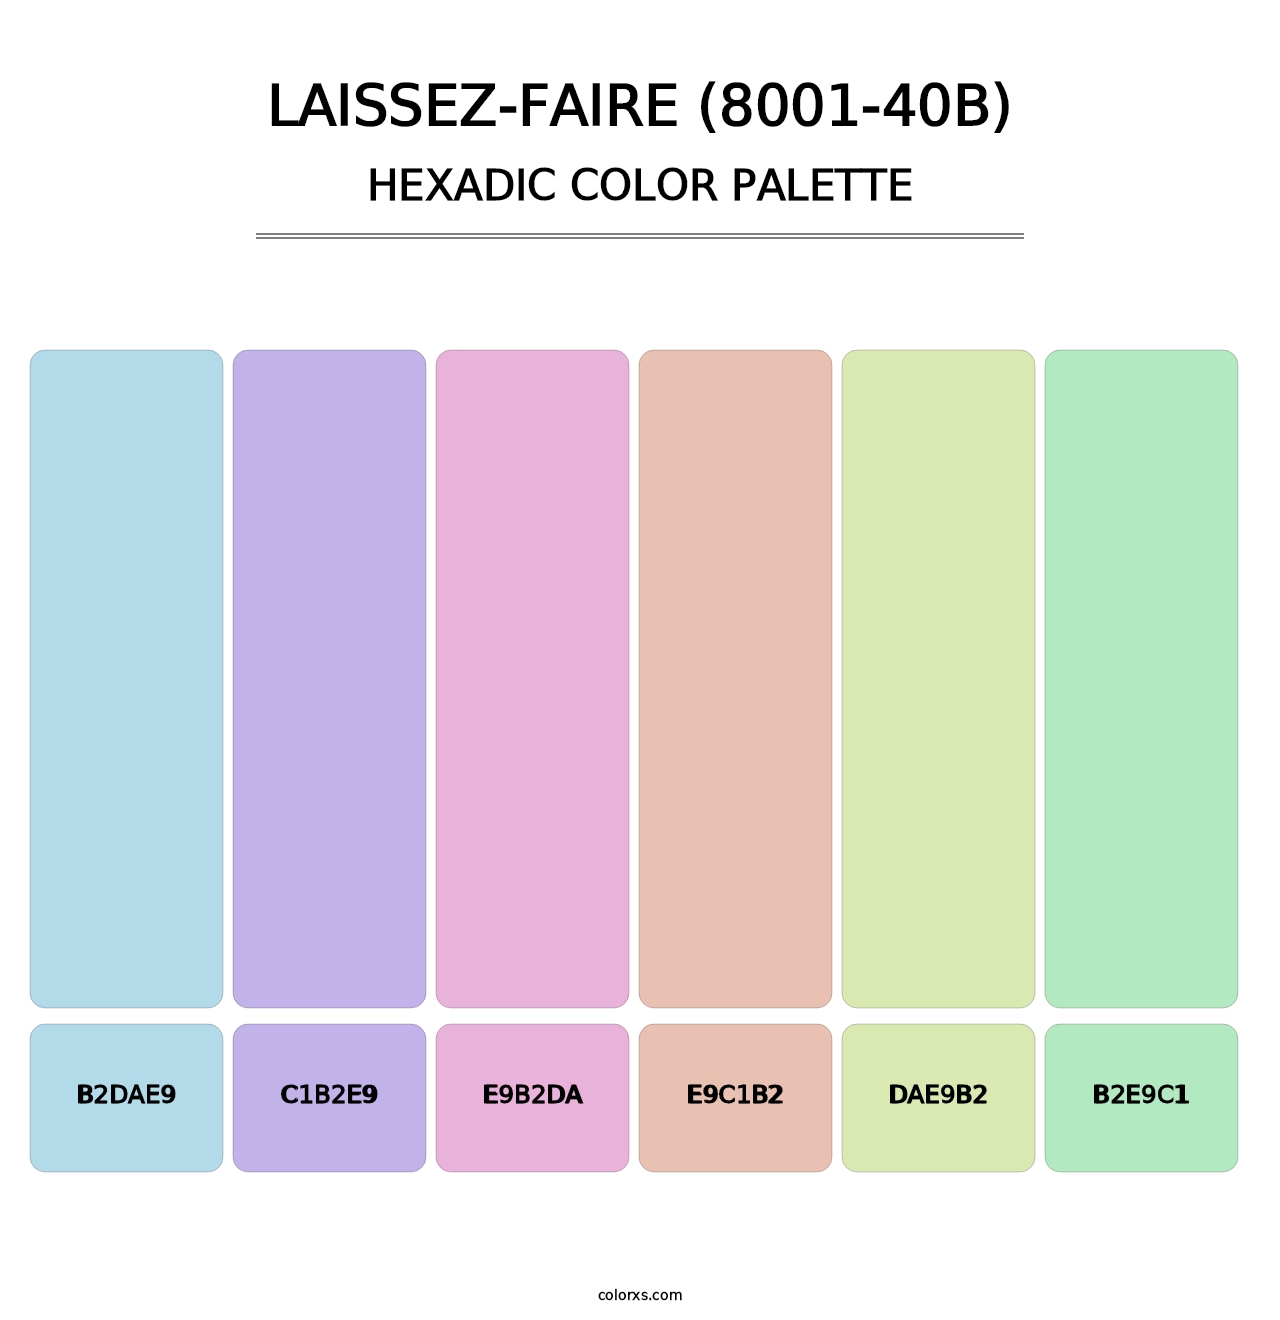 Laissez-Faire (8001-40B) - Hexadic Color Palette